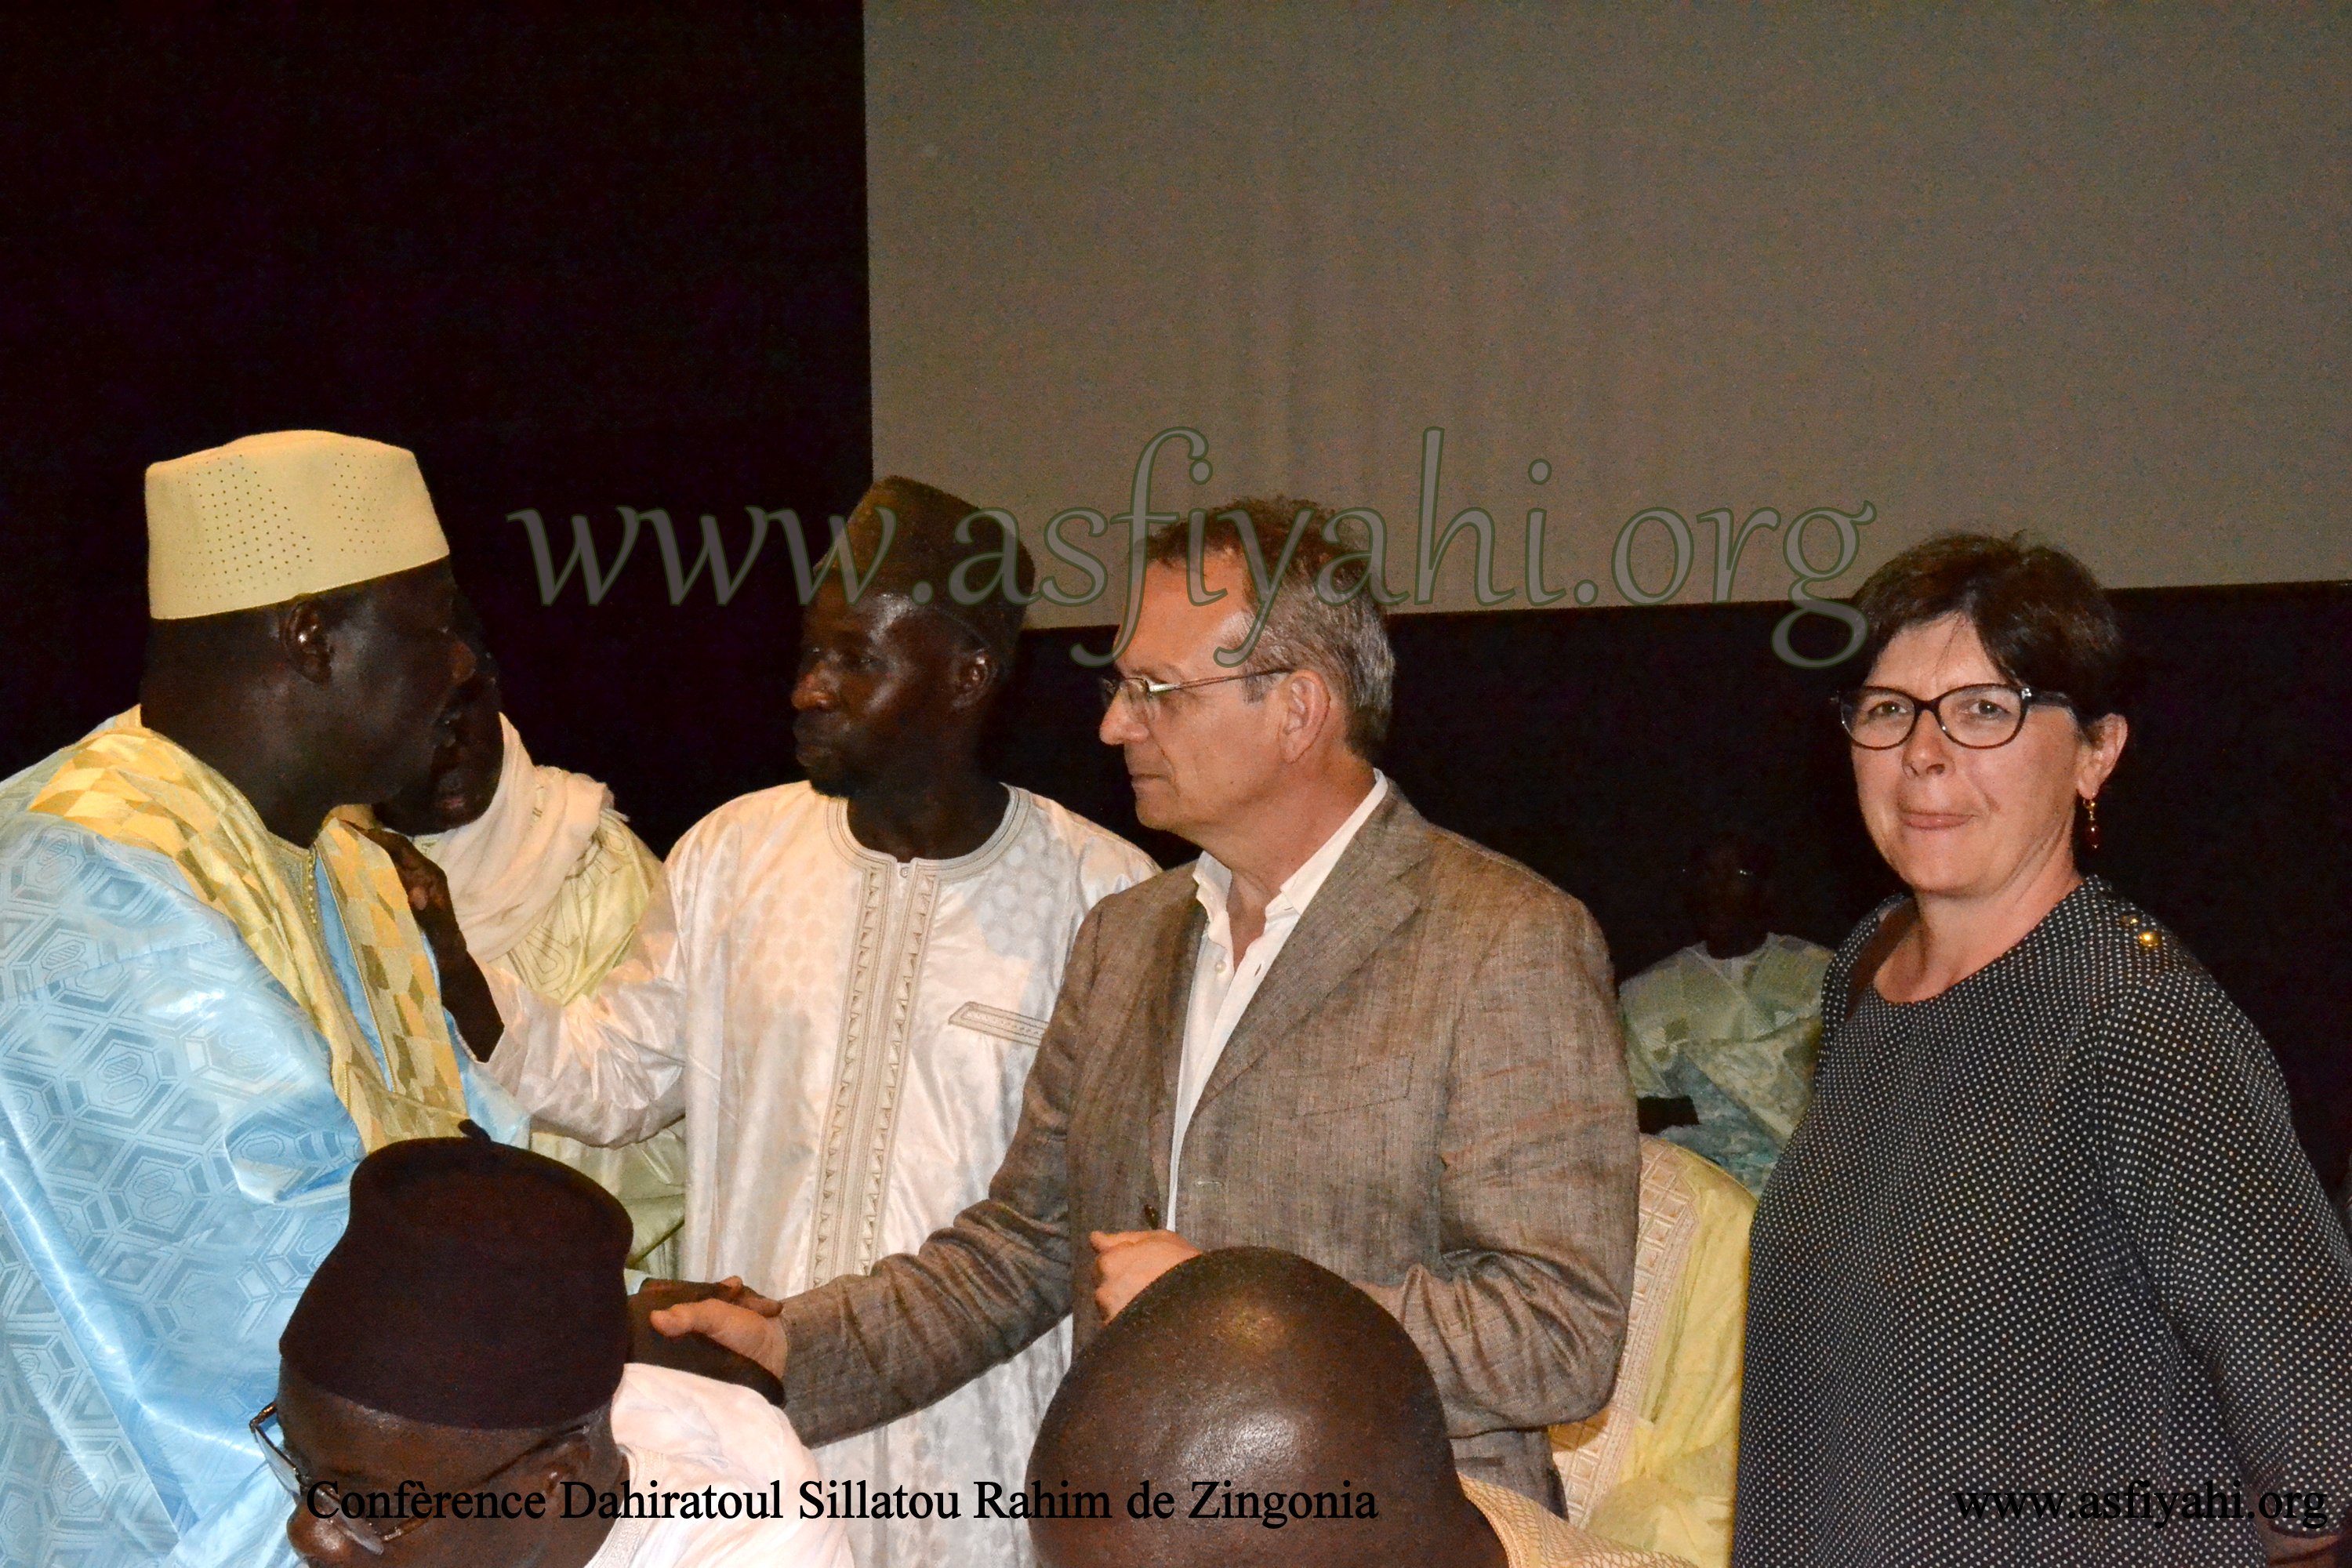 PHOTOS - ITALIE - BERGAMO : Les images de Conférence du Dahiratoul Sillatou Rahim de Zingonia